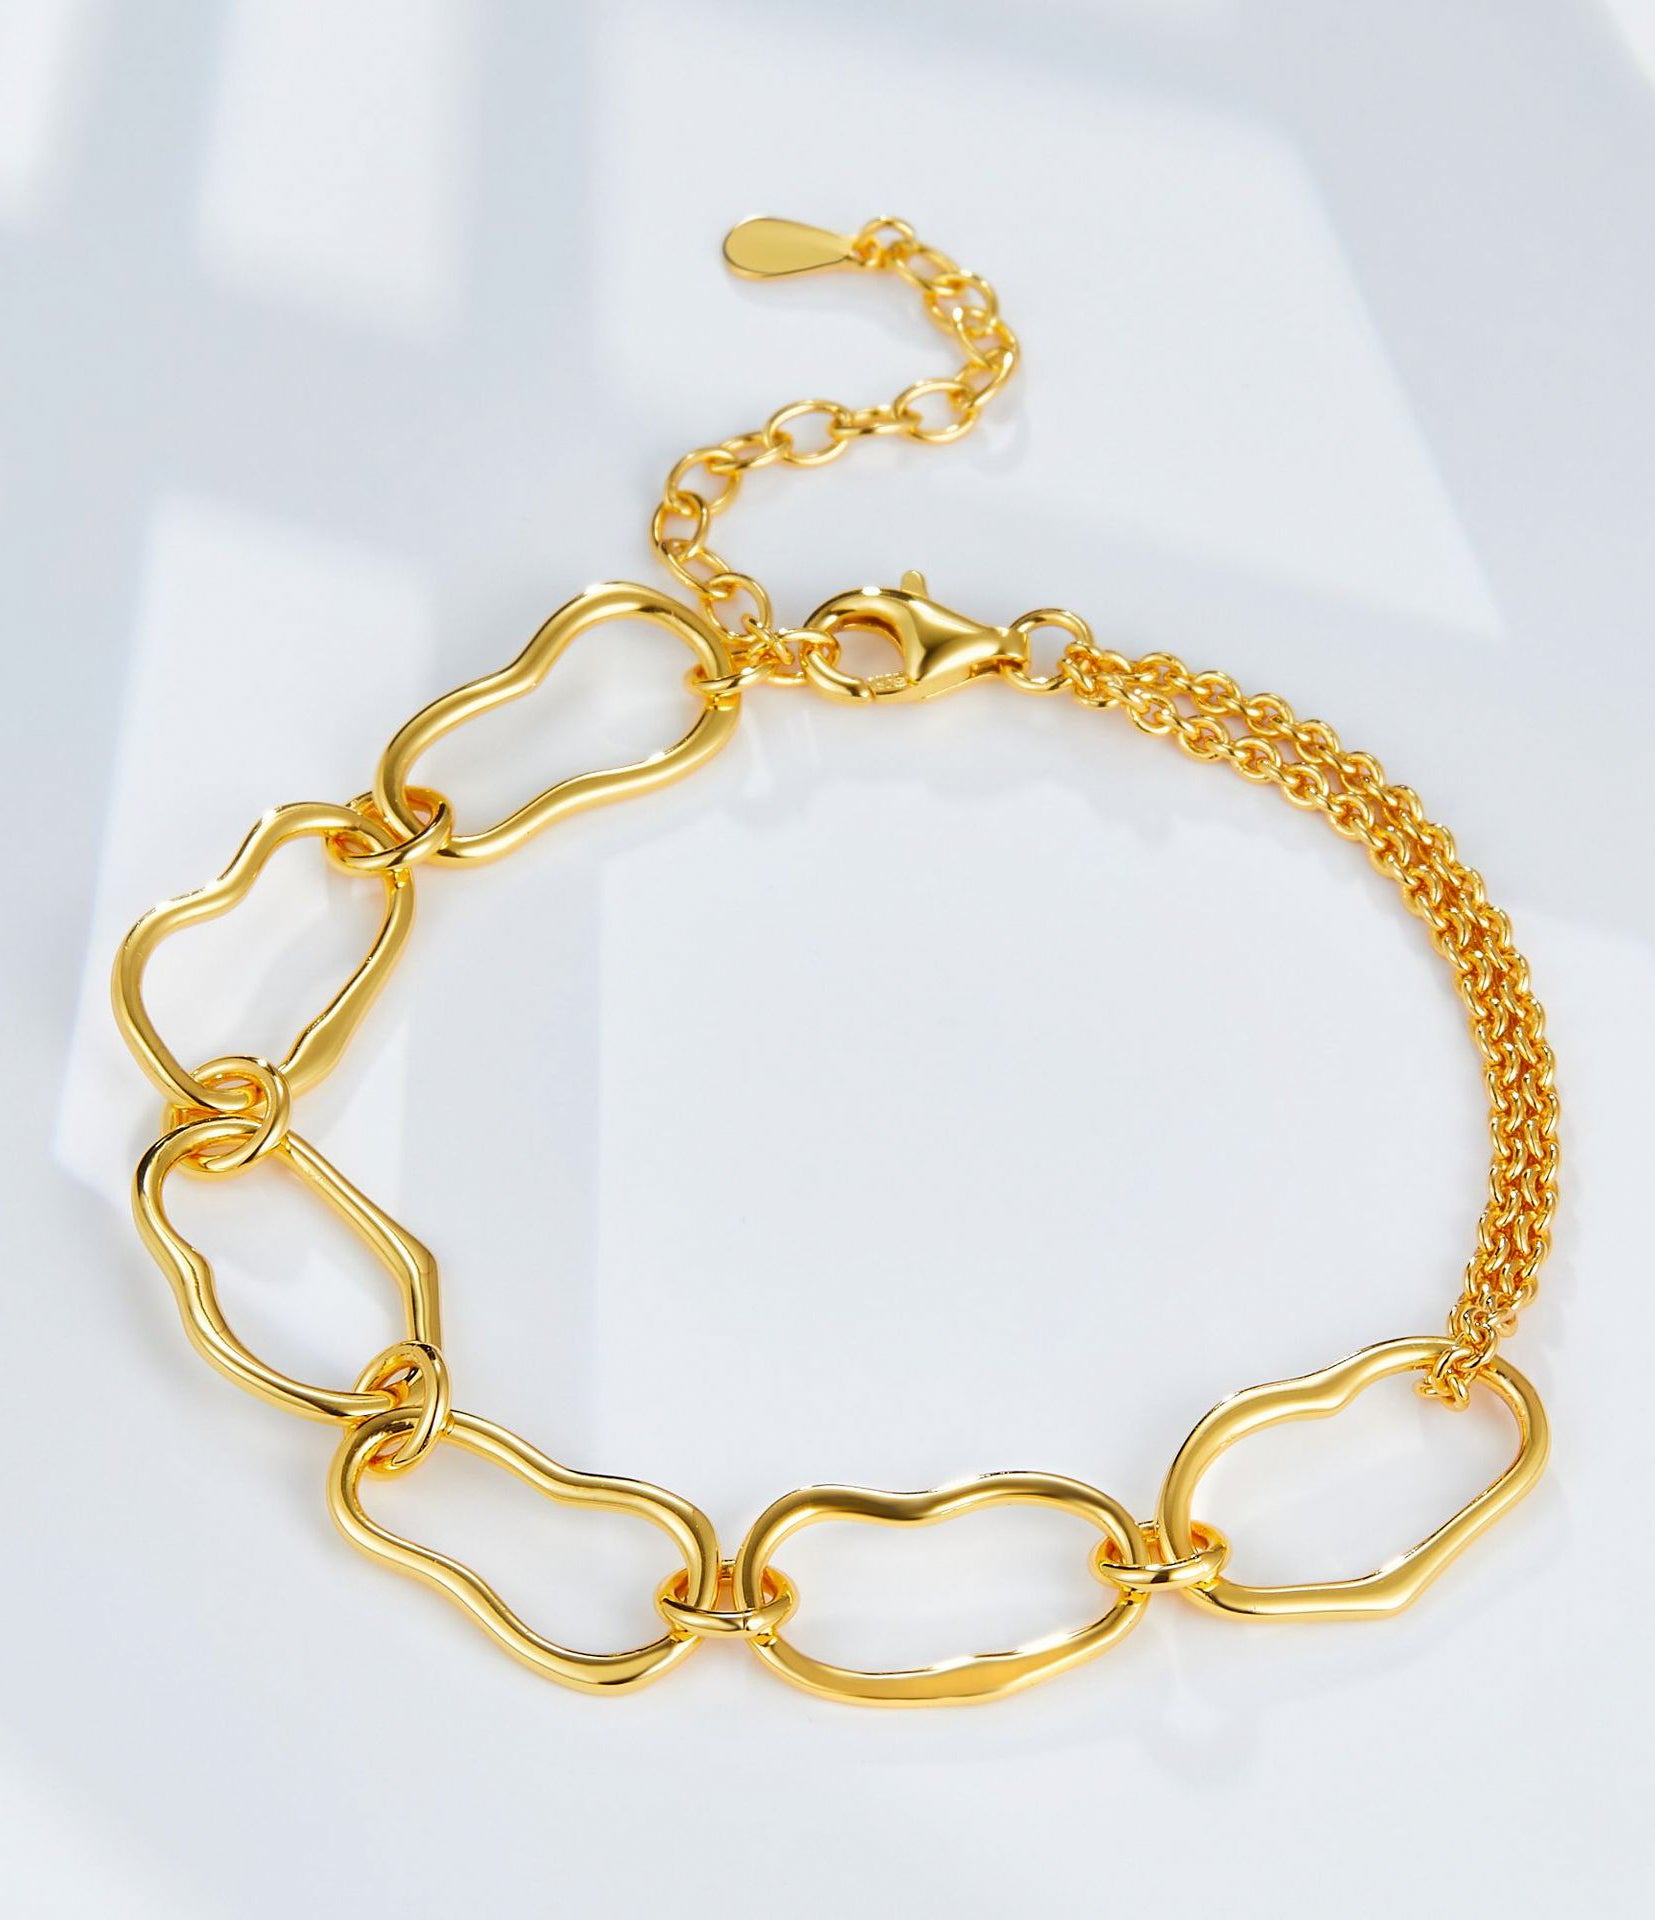 Irrégularité Gold Chain Bracelet